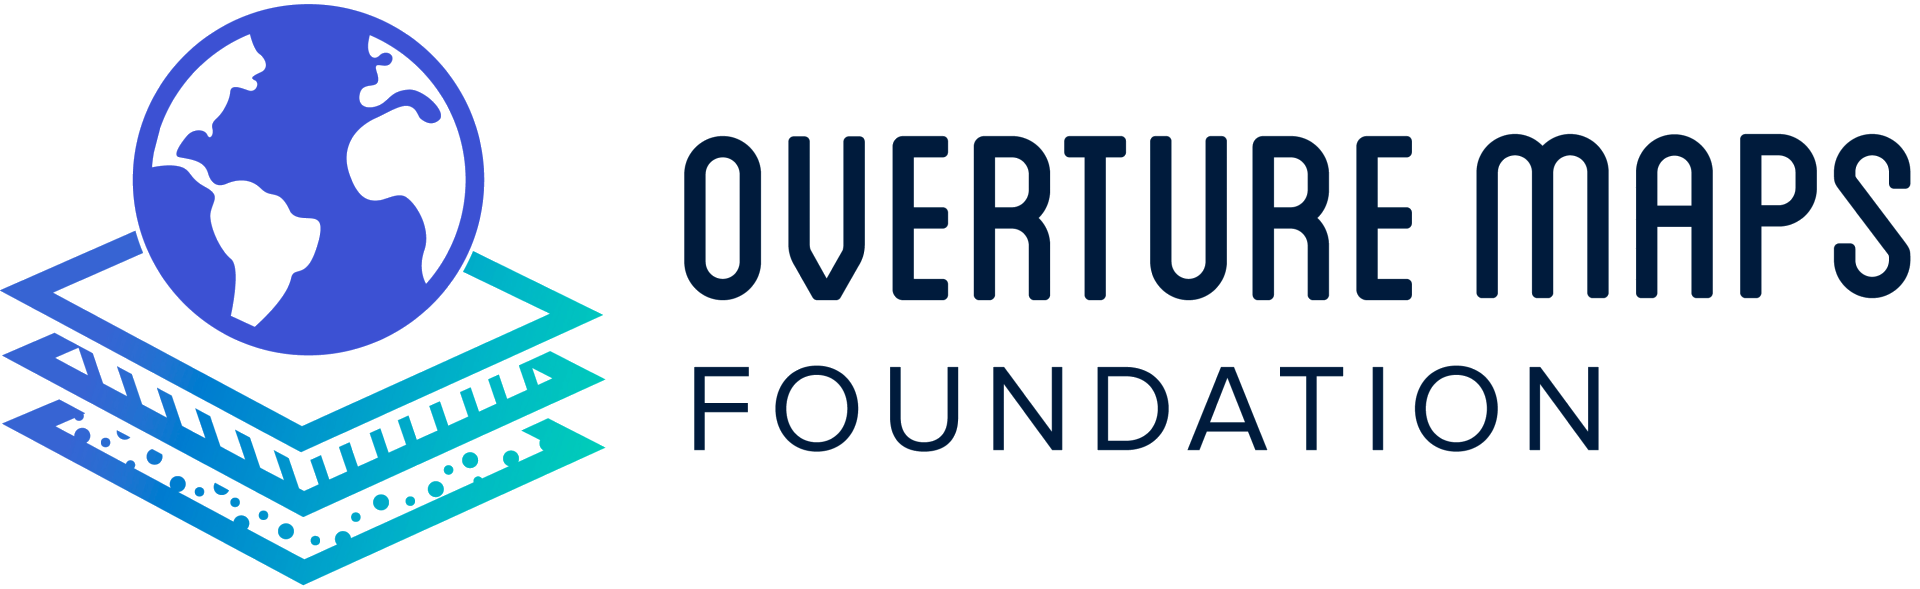 Overture Maps Foundation logo